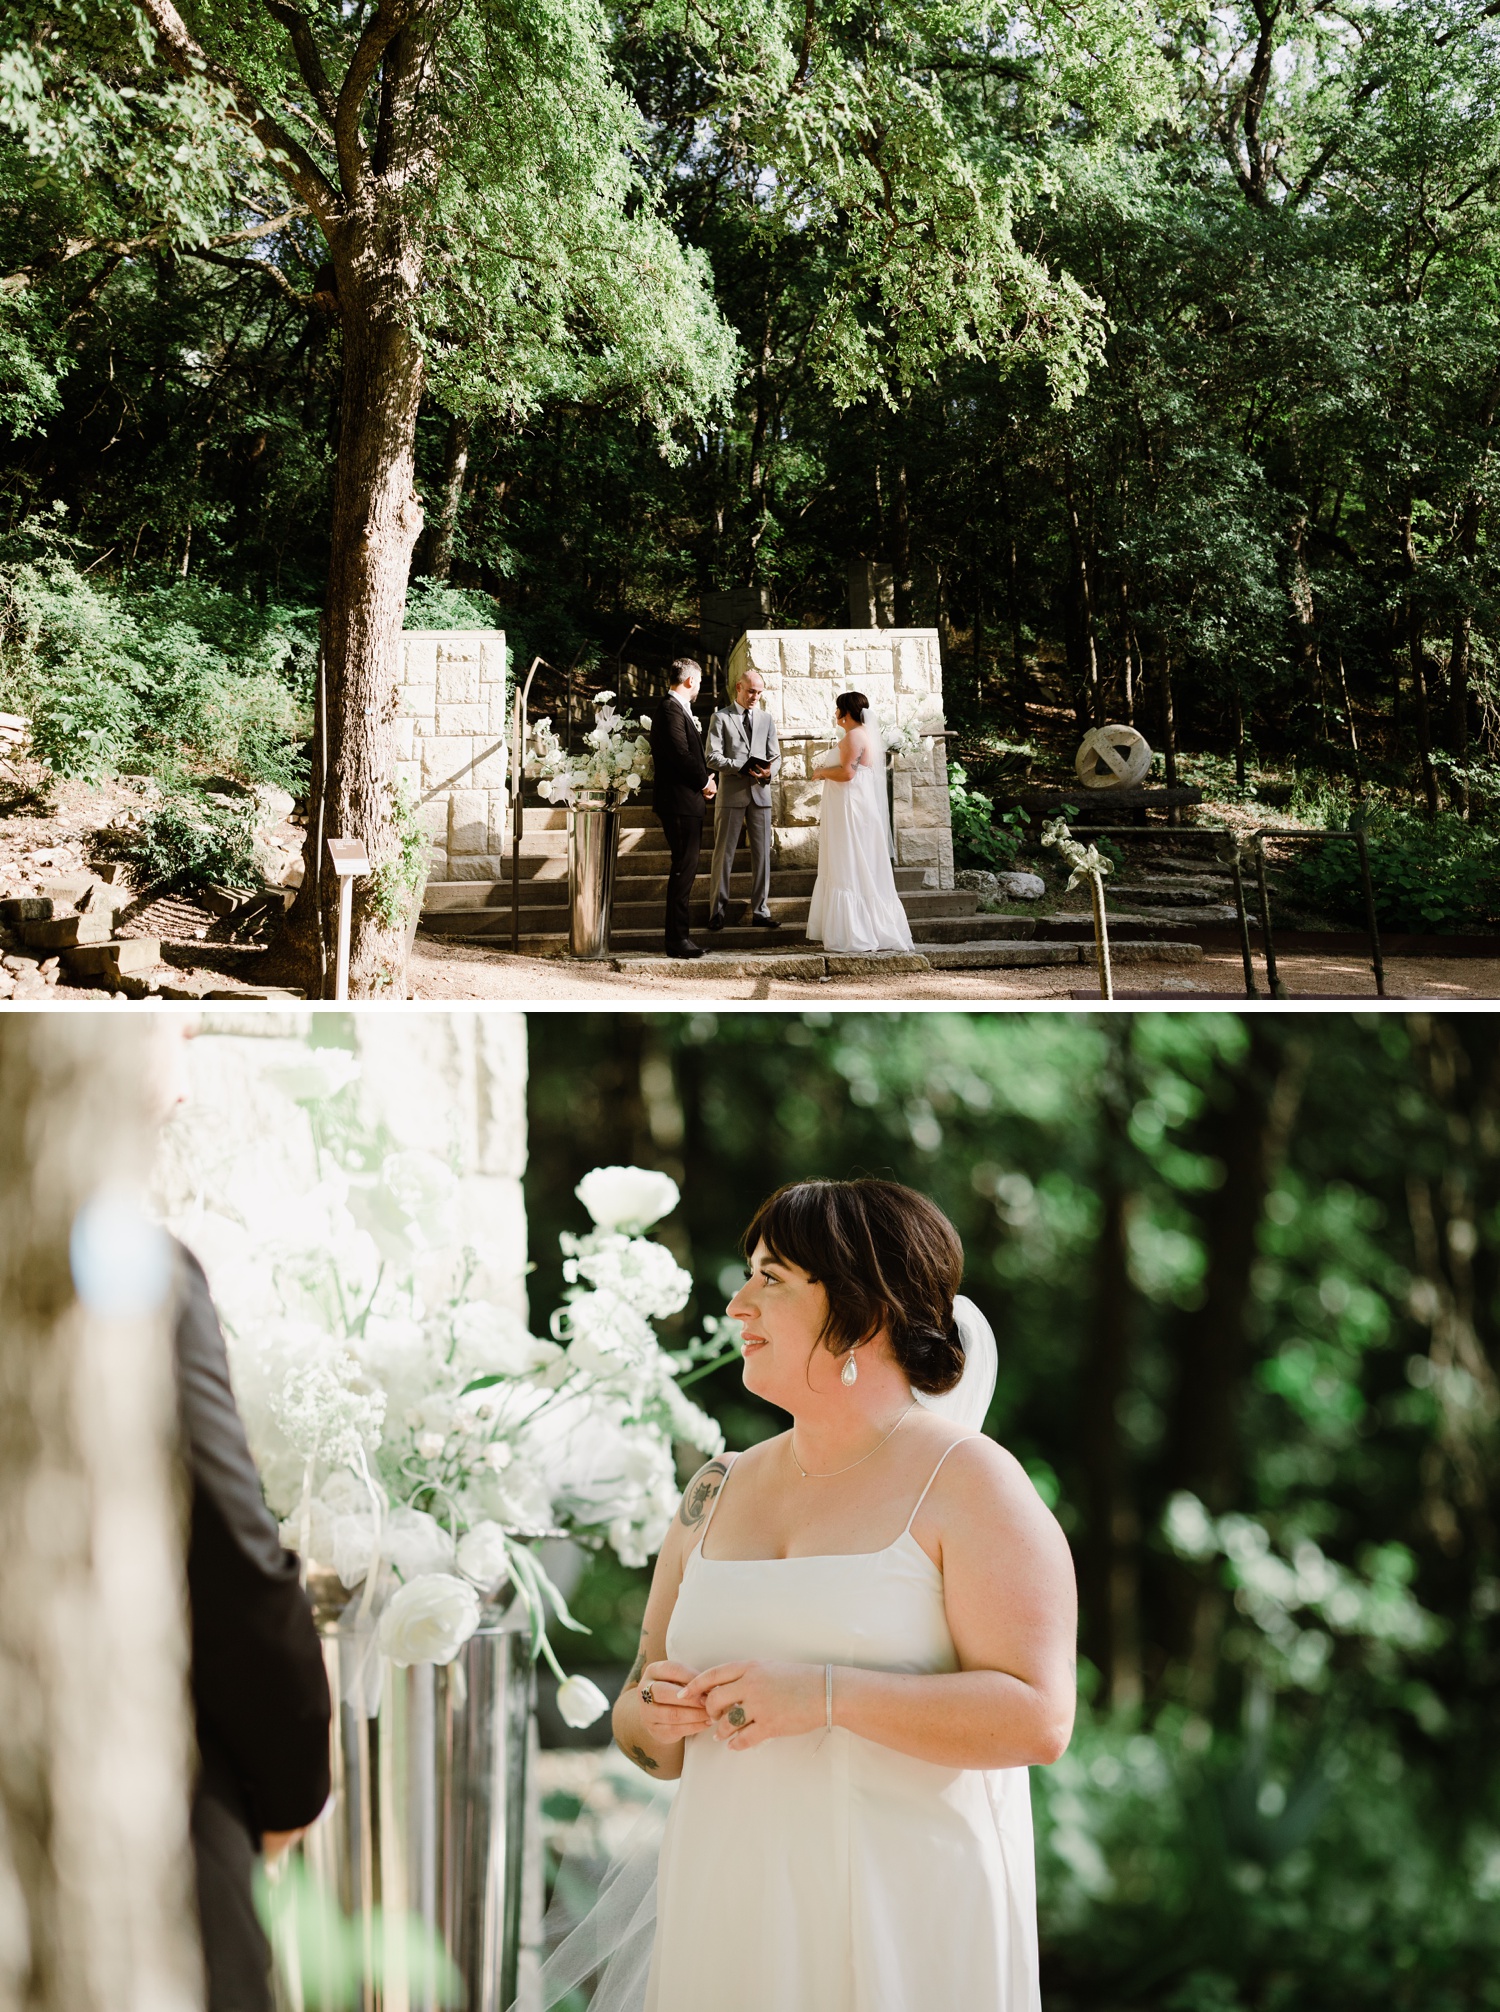 Outdoor wedding ceremony at UMLAUF Sculpture Garden